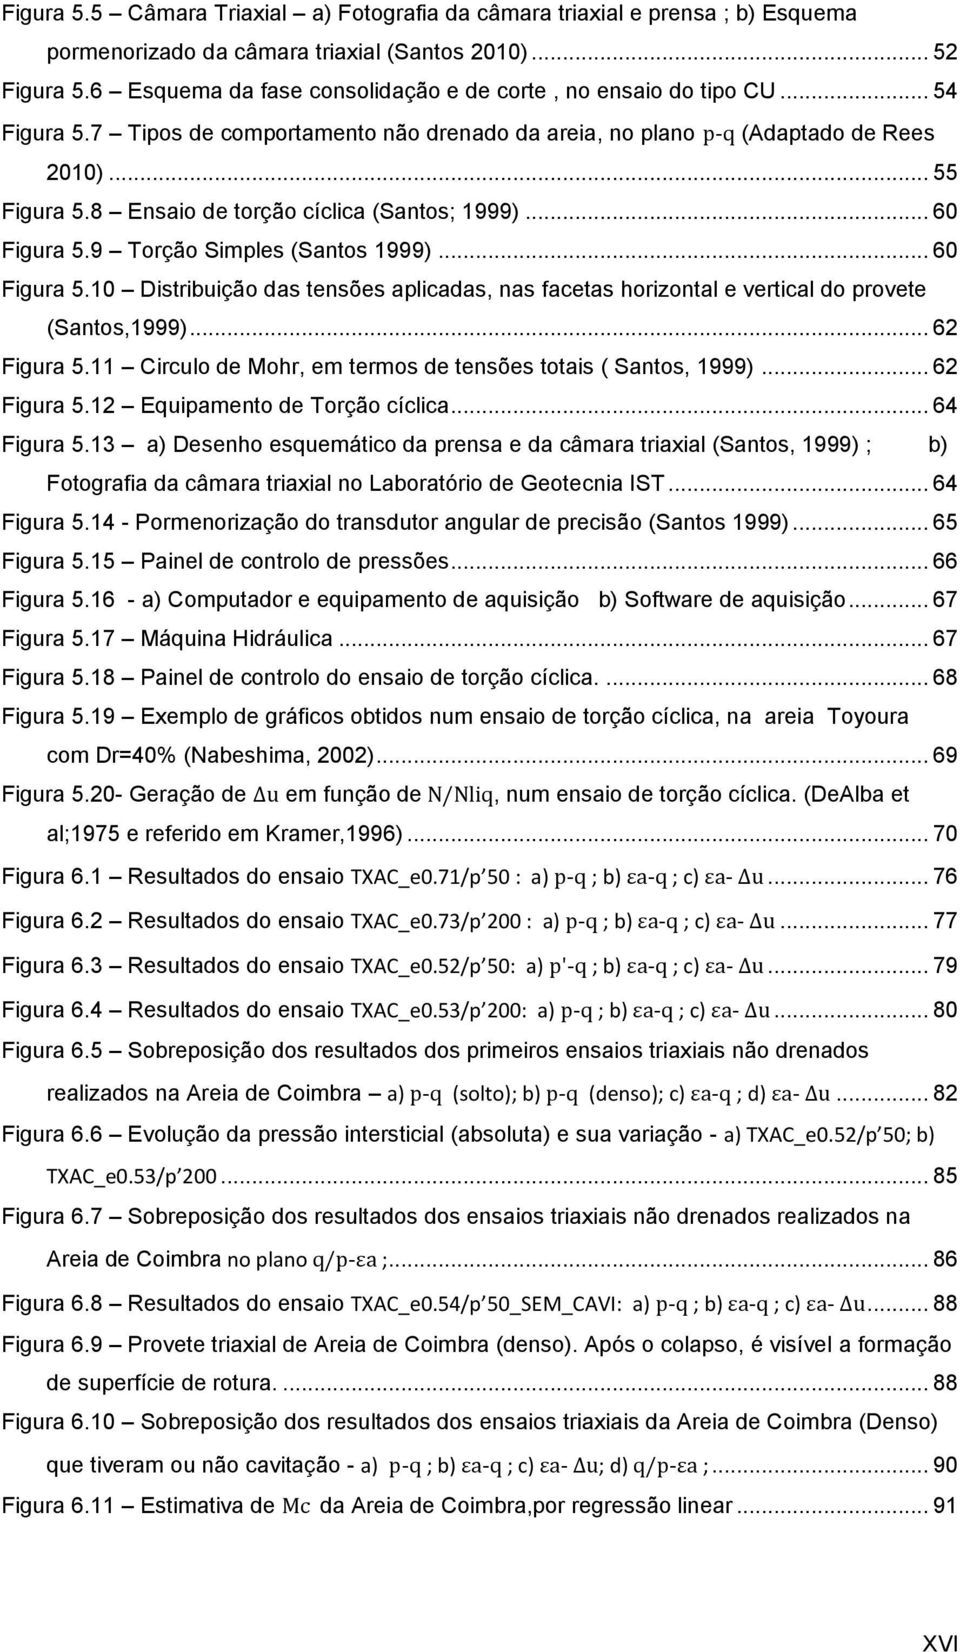 8 Ensaio de torção cíclica (Santos; 1999)... 60 Figura 5.9 Torção Simples (Santos 1999)... 60 Figura 5.10 Distribuição das tensões aplicadas, nas facetas horizontal e vertical do provete (Santos,1999).